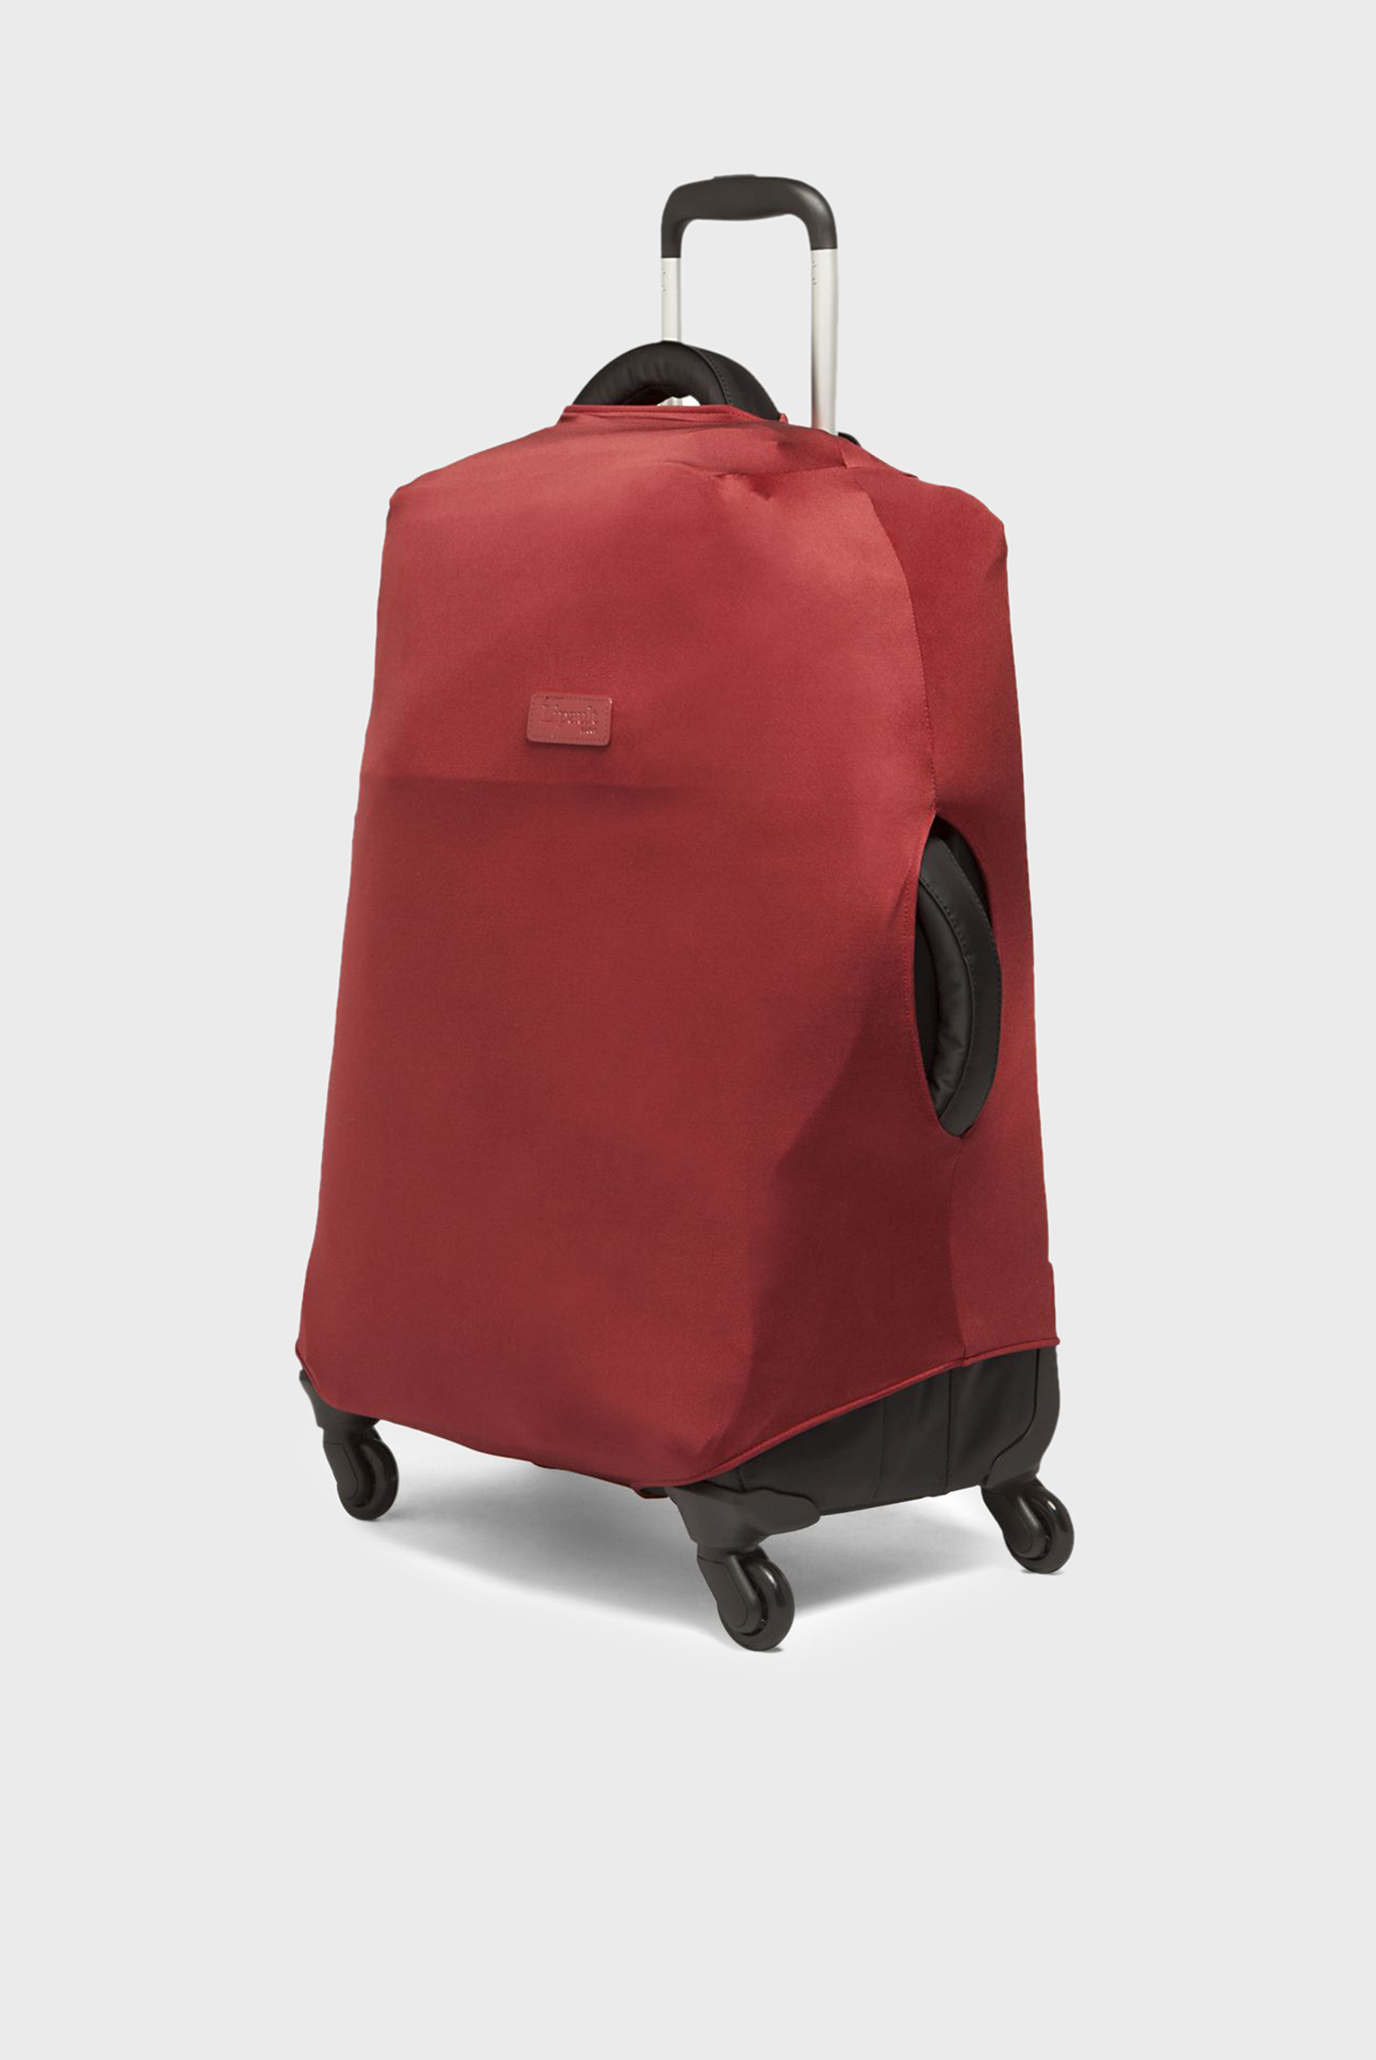 Красный чехол для чемодана 52 см 1